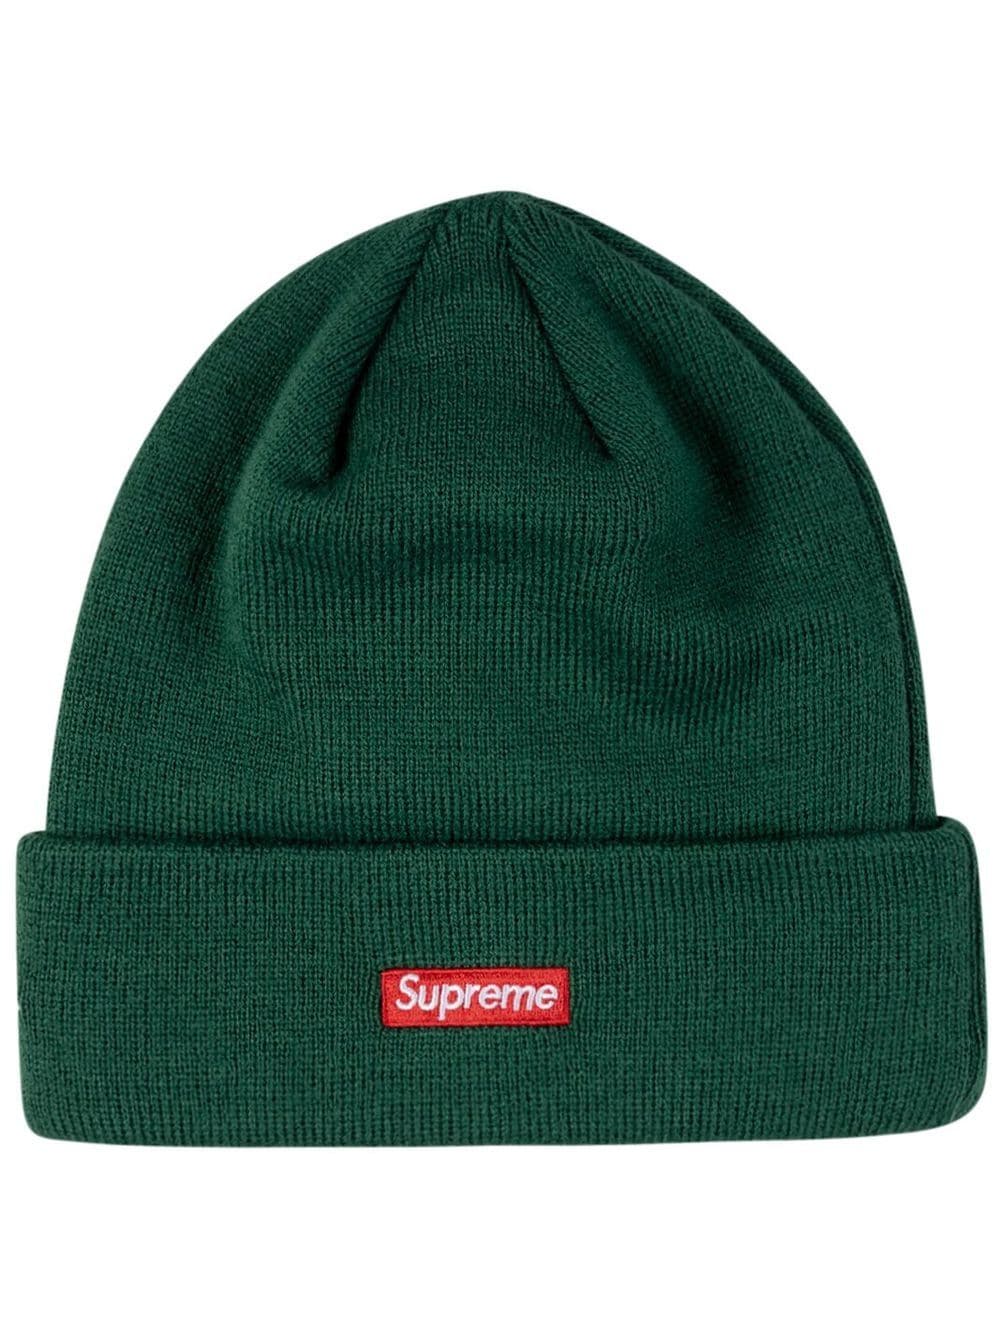 Supreme x New Era Beanie mit S-Logo - Grün von Supreme